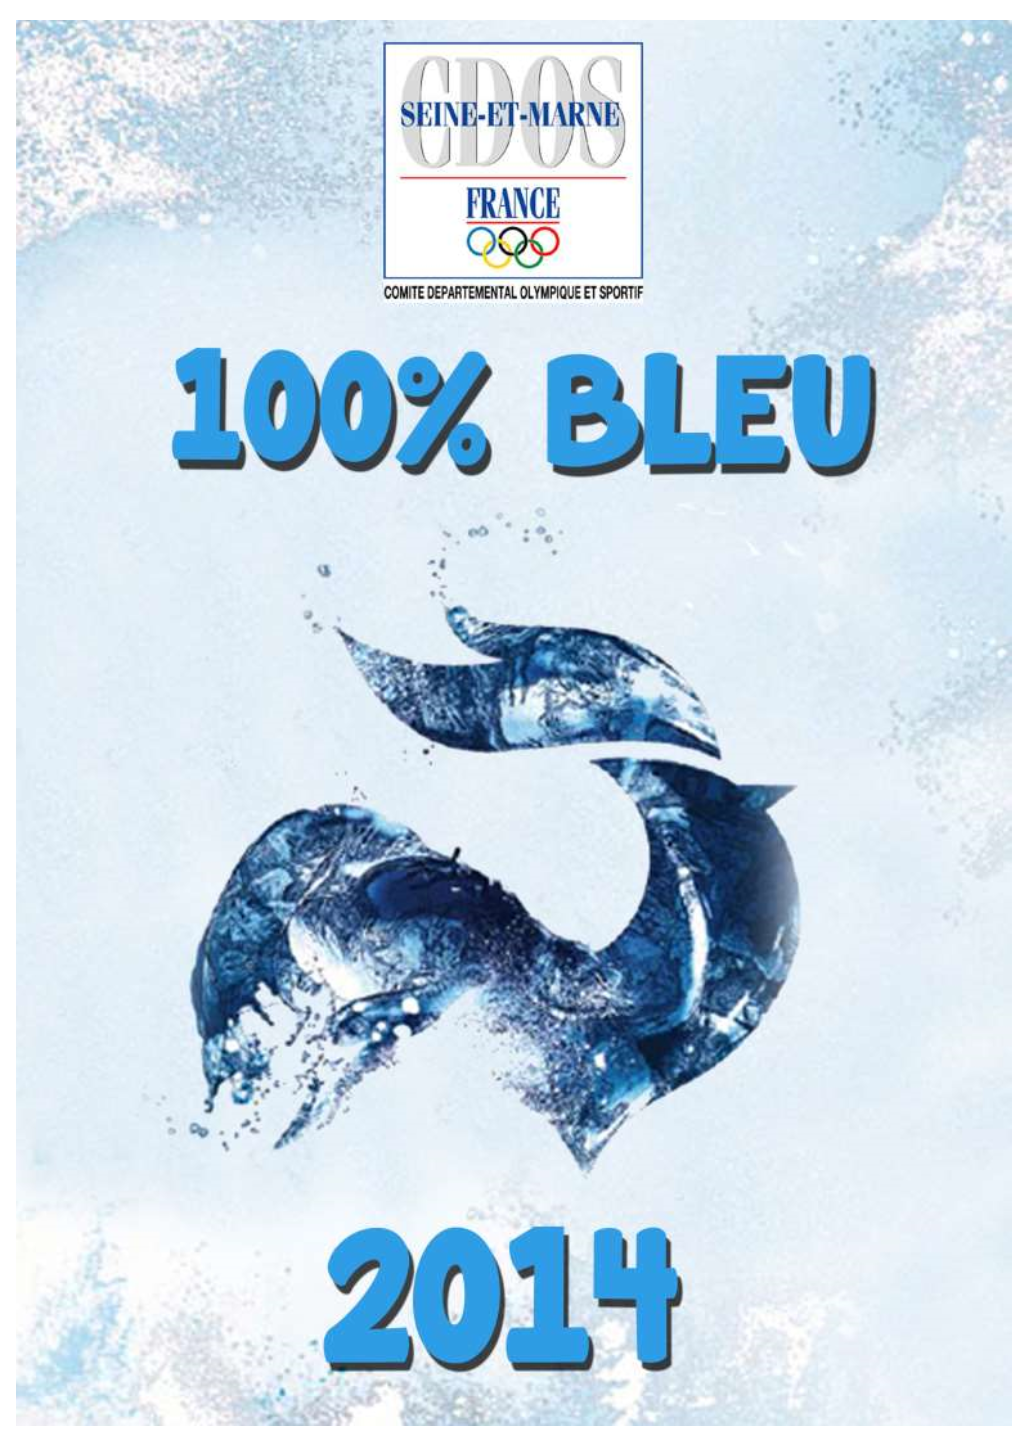 CDOS 77) Est Heureux De Vous Présenter, En Ce Début D’Année 2015, Son Guide « 100% Bleu »